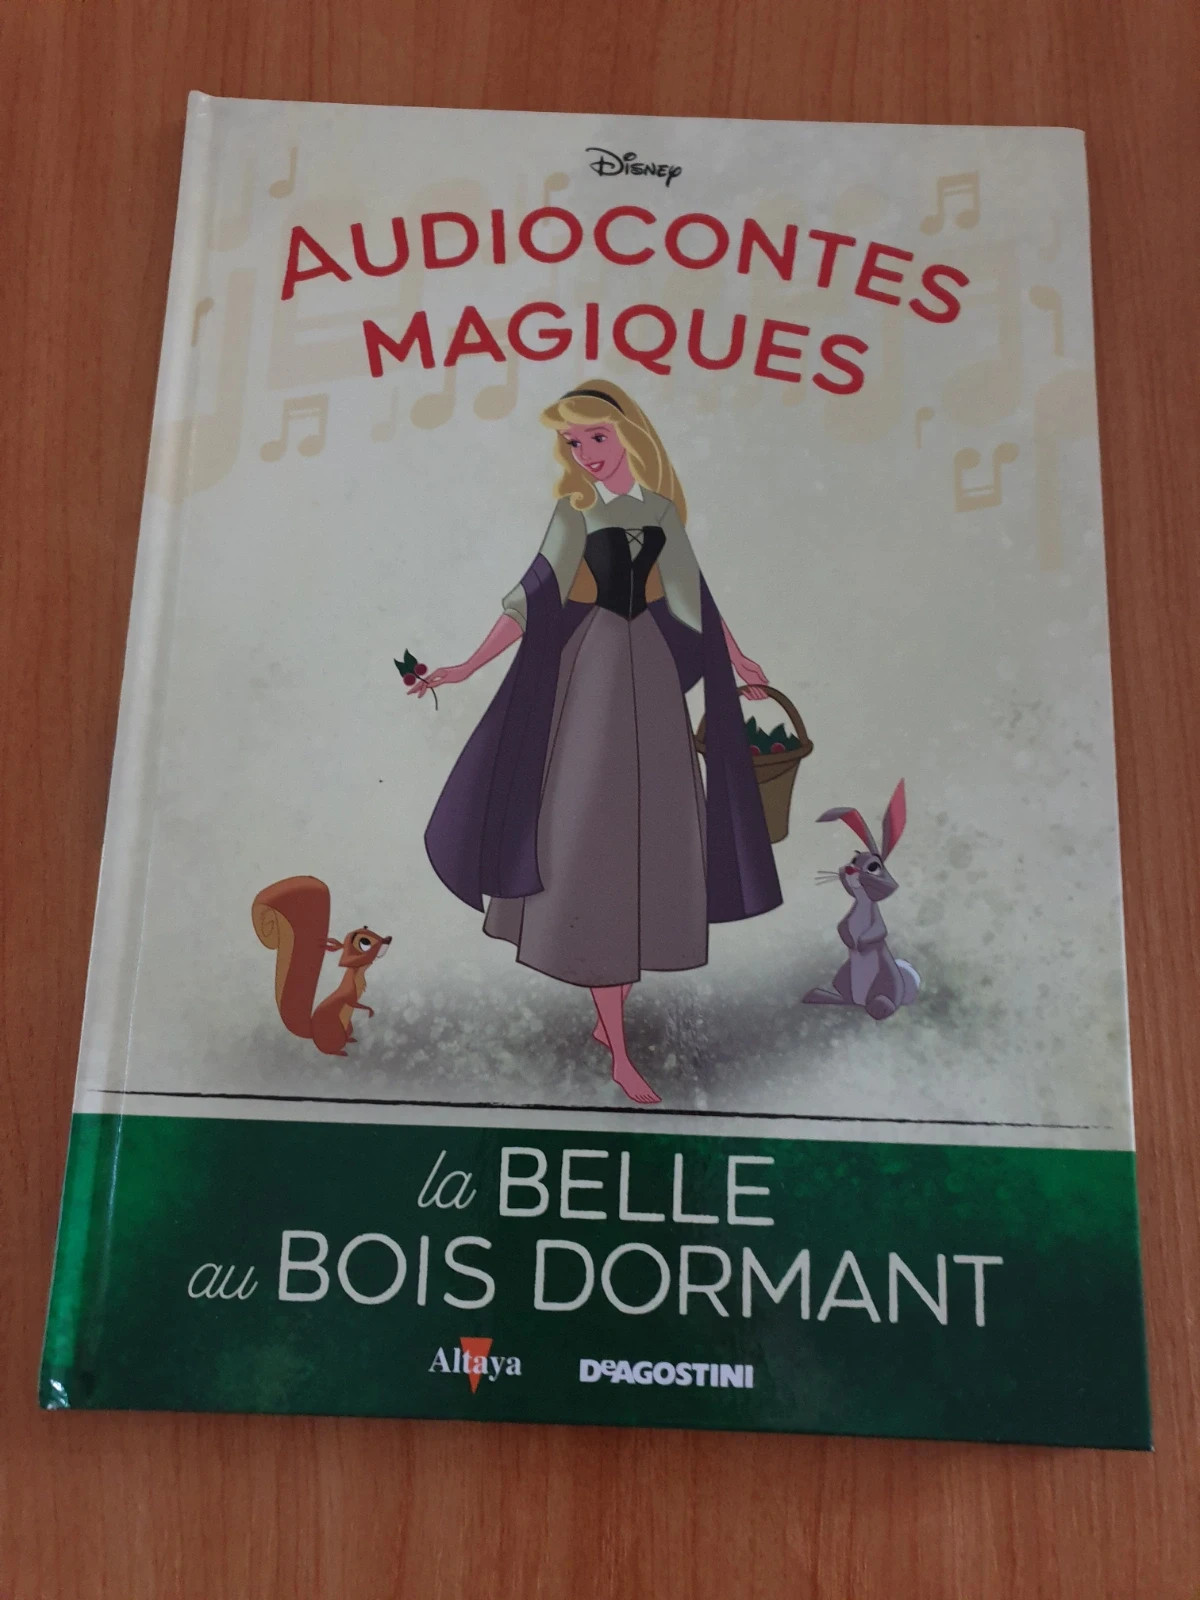  Audiocontes Disney